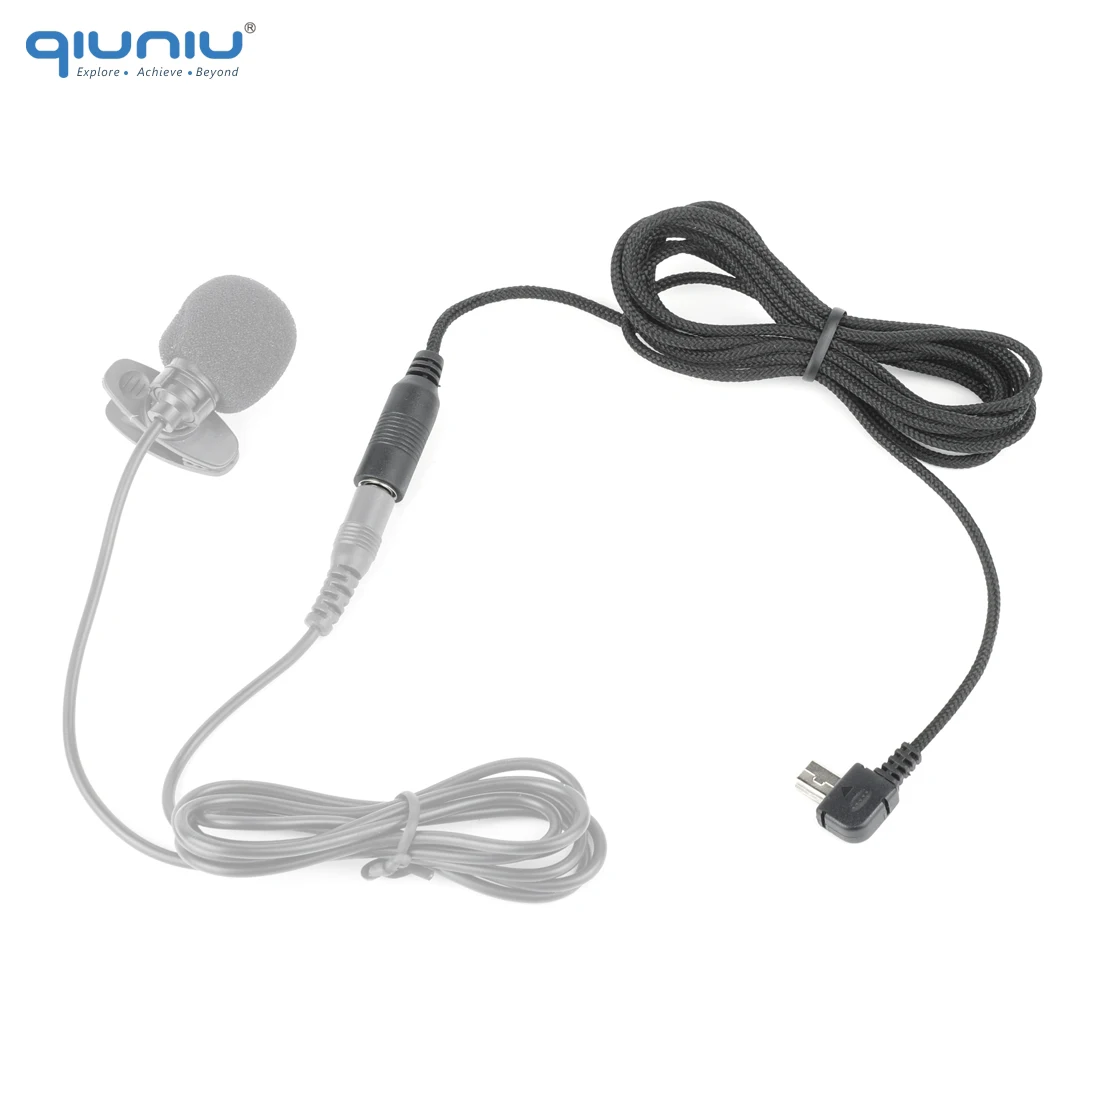 QIUNIU Mini Micrófono USB Adaptador de Micrófono de Cable de Transferencia de 3,5 mm para Micrófono Externo para GoPro Hero 3 3+ 4 para Go Pro Accesorios 3